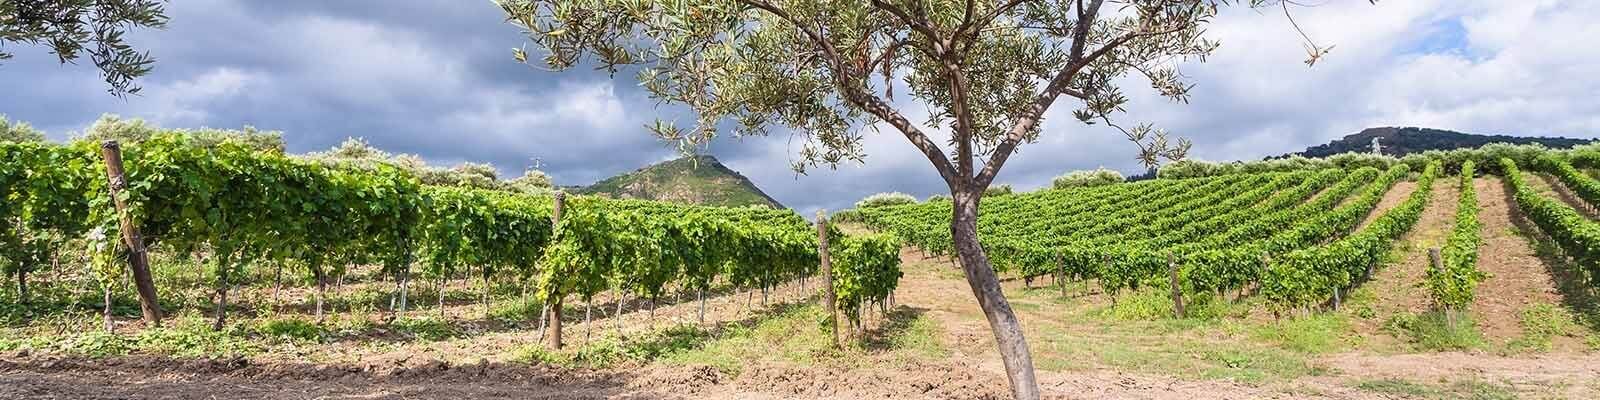 Vores samling af Sicilien - Find den hos Onshore Cellars, din leverandør af yacht-vin